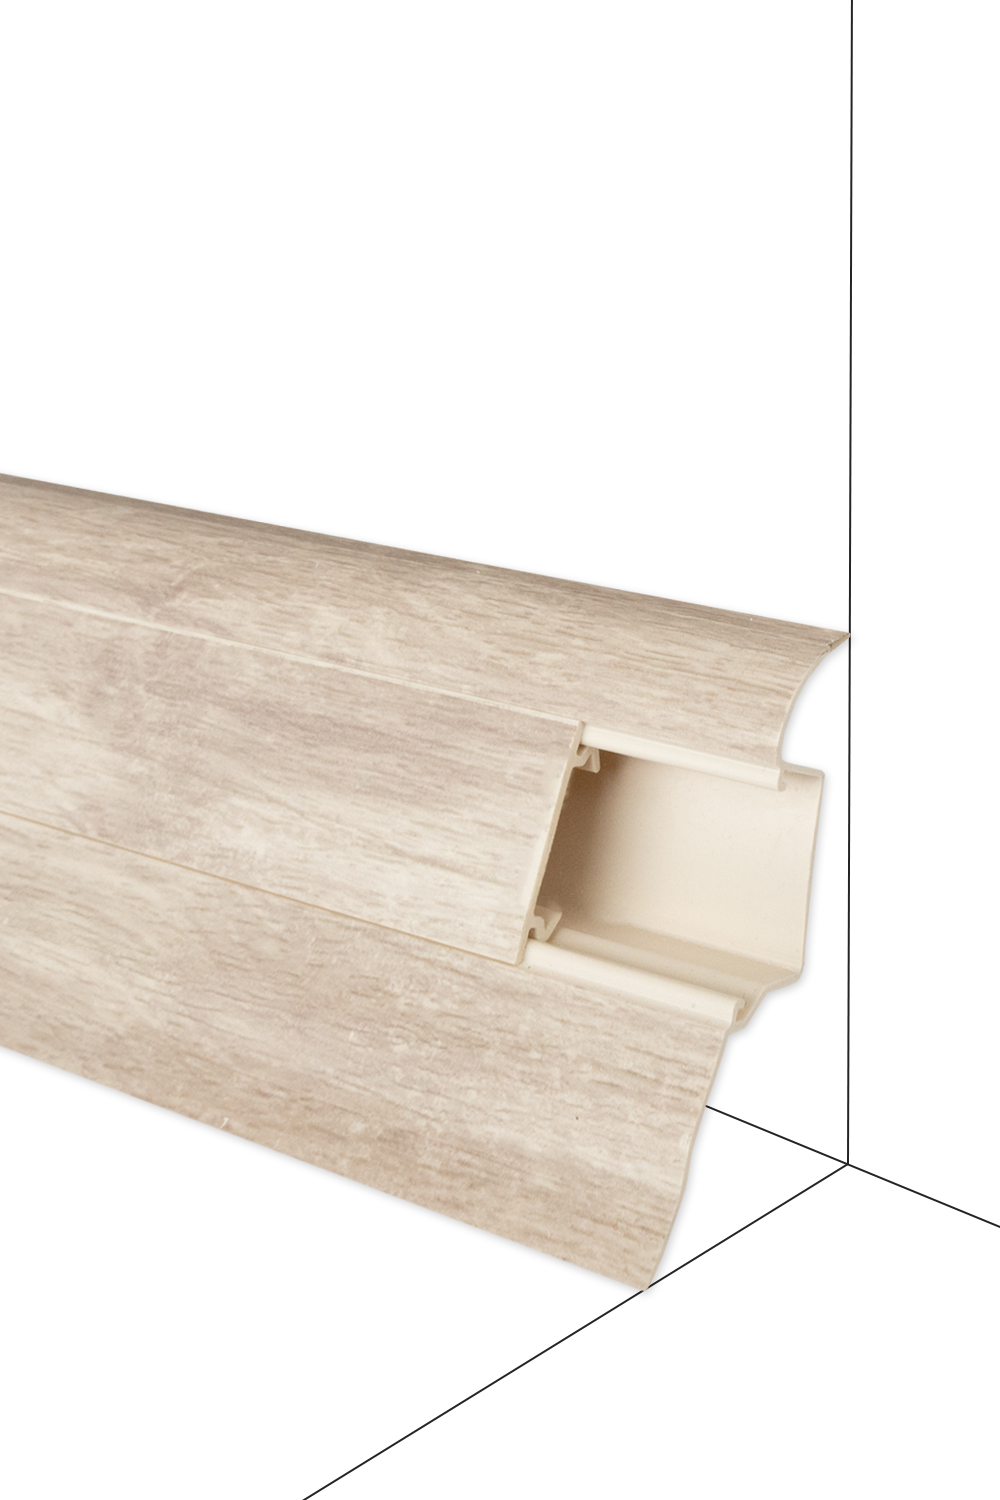 Podlahová lišta DOLLKEN W653 Veranda - dĺžka 250 cm